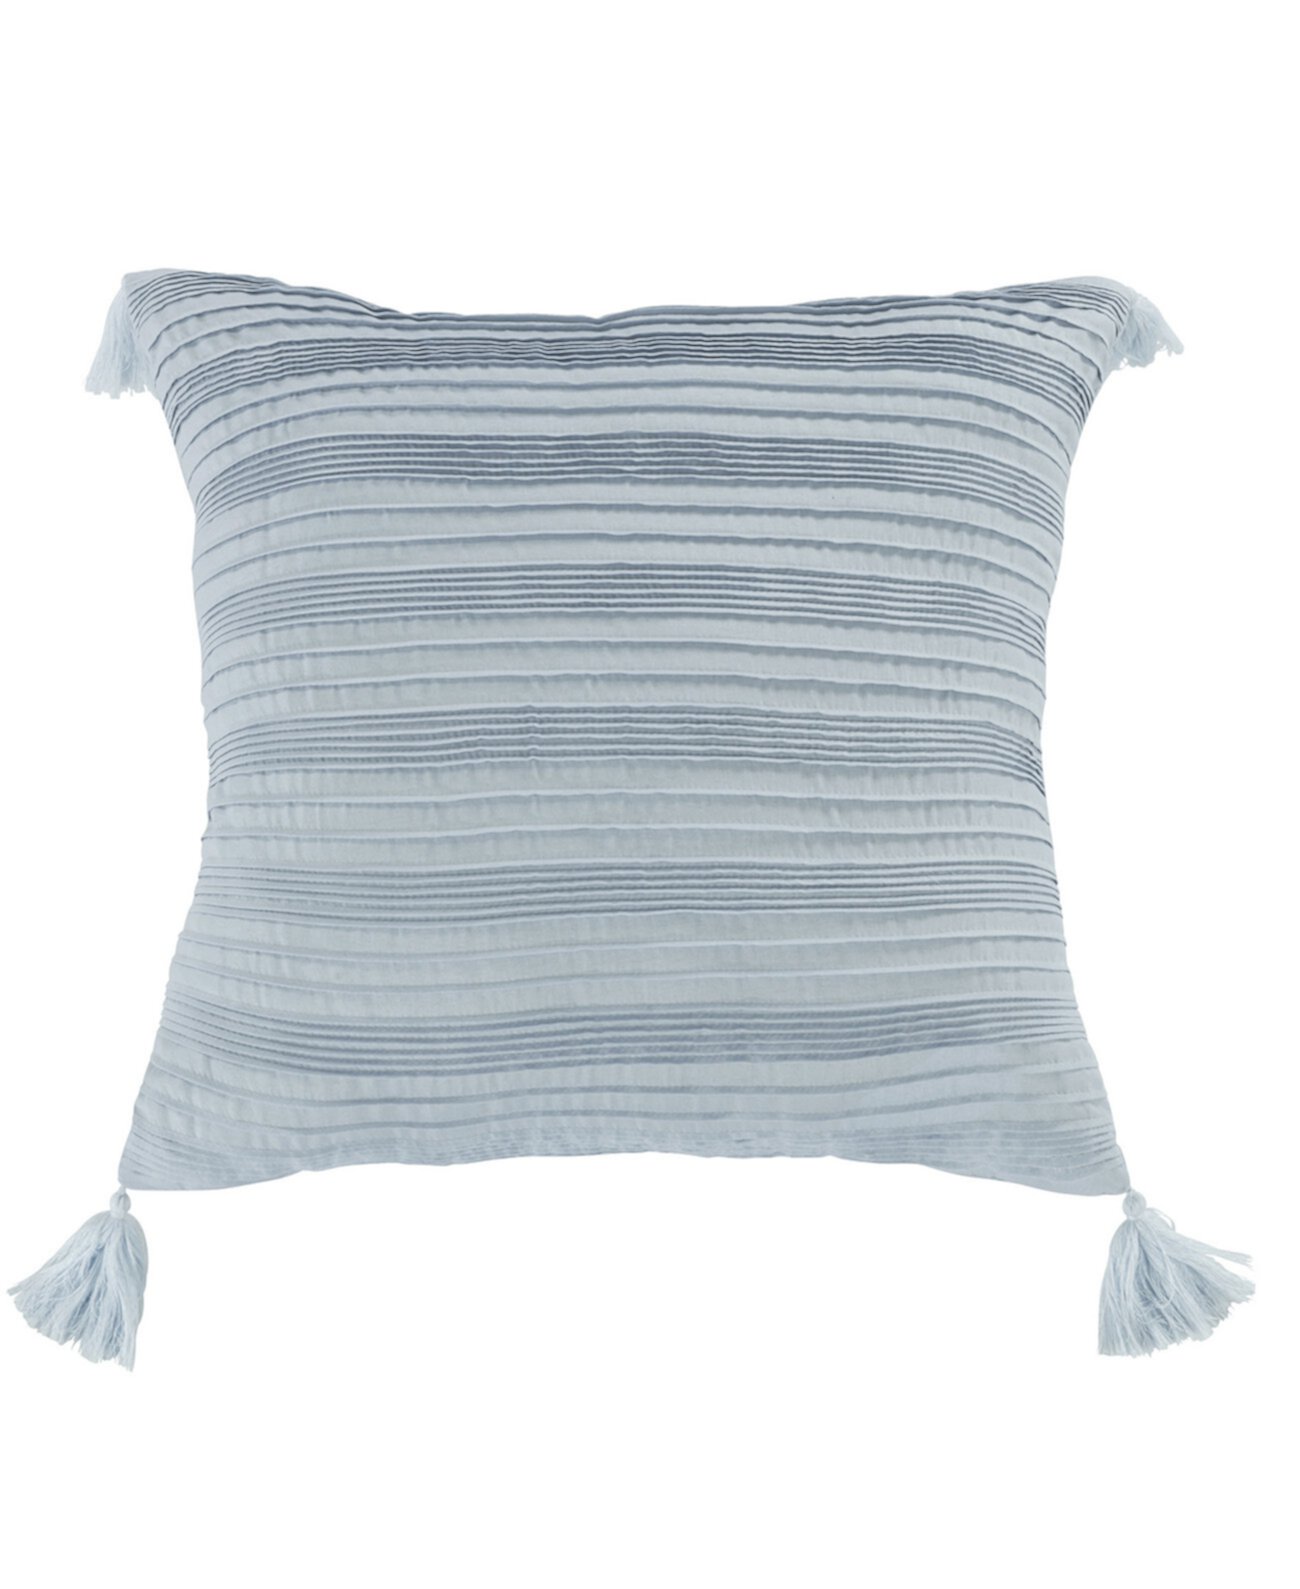 Голубая декоративная подушка с беленым дощатым настилом, 18 x 18 дюймов American Heritage Textiles